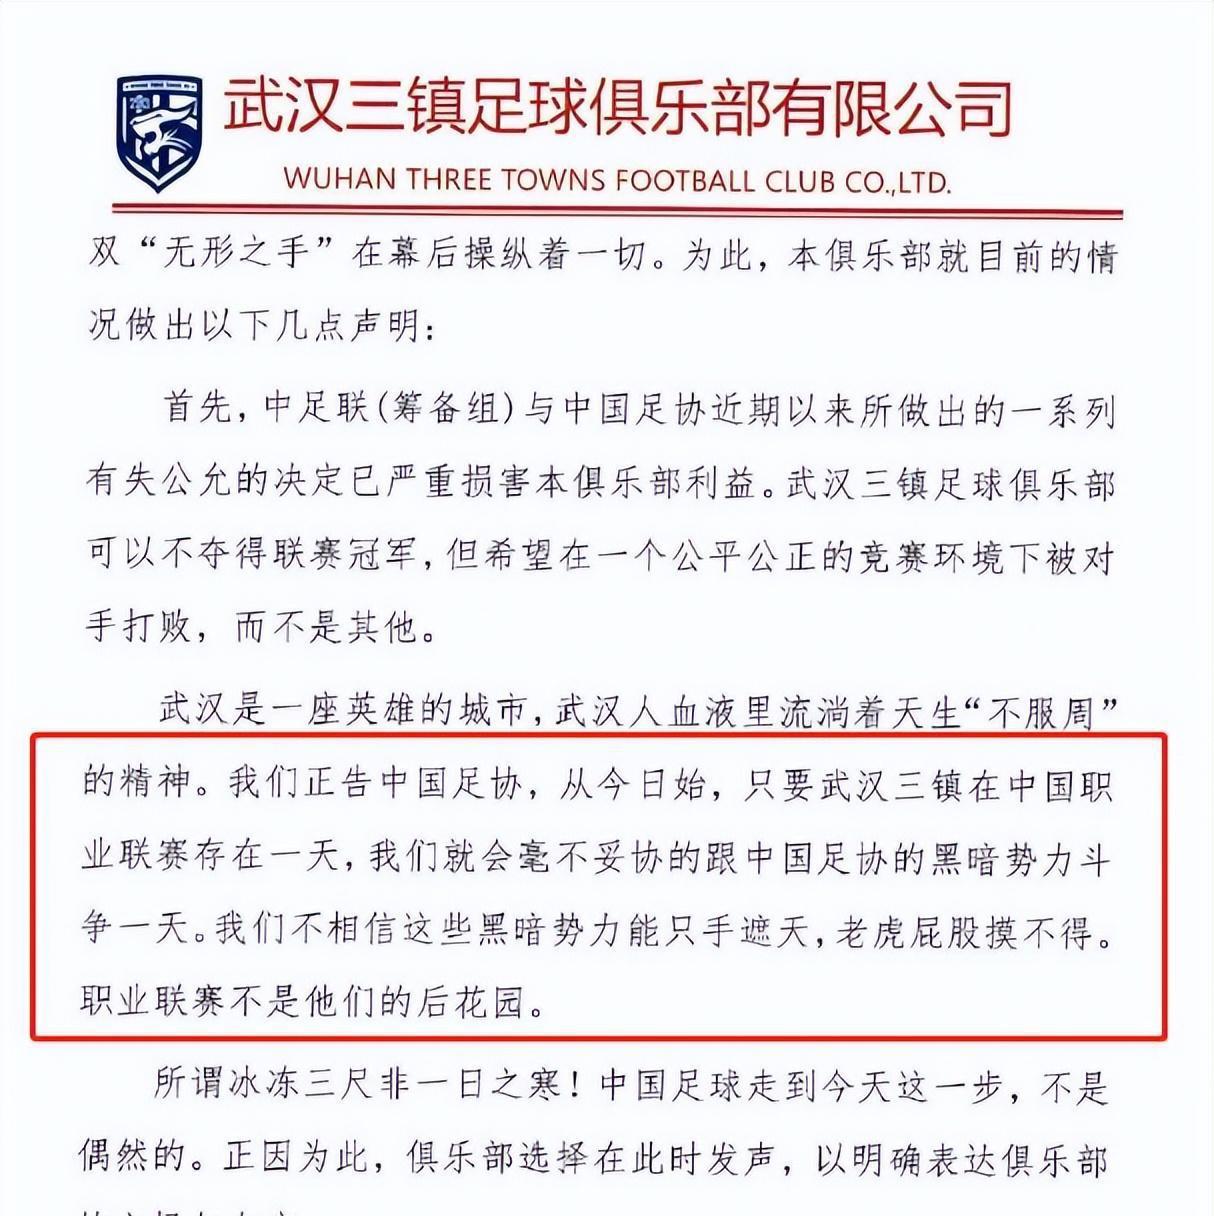 中国职业联赛球队发布声明与不良势力斗争，正告官方毫不妥协(2)